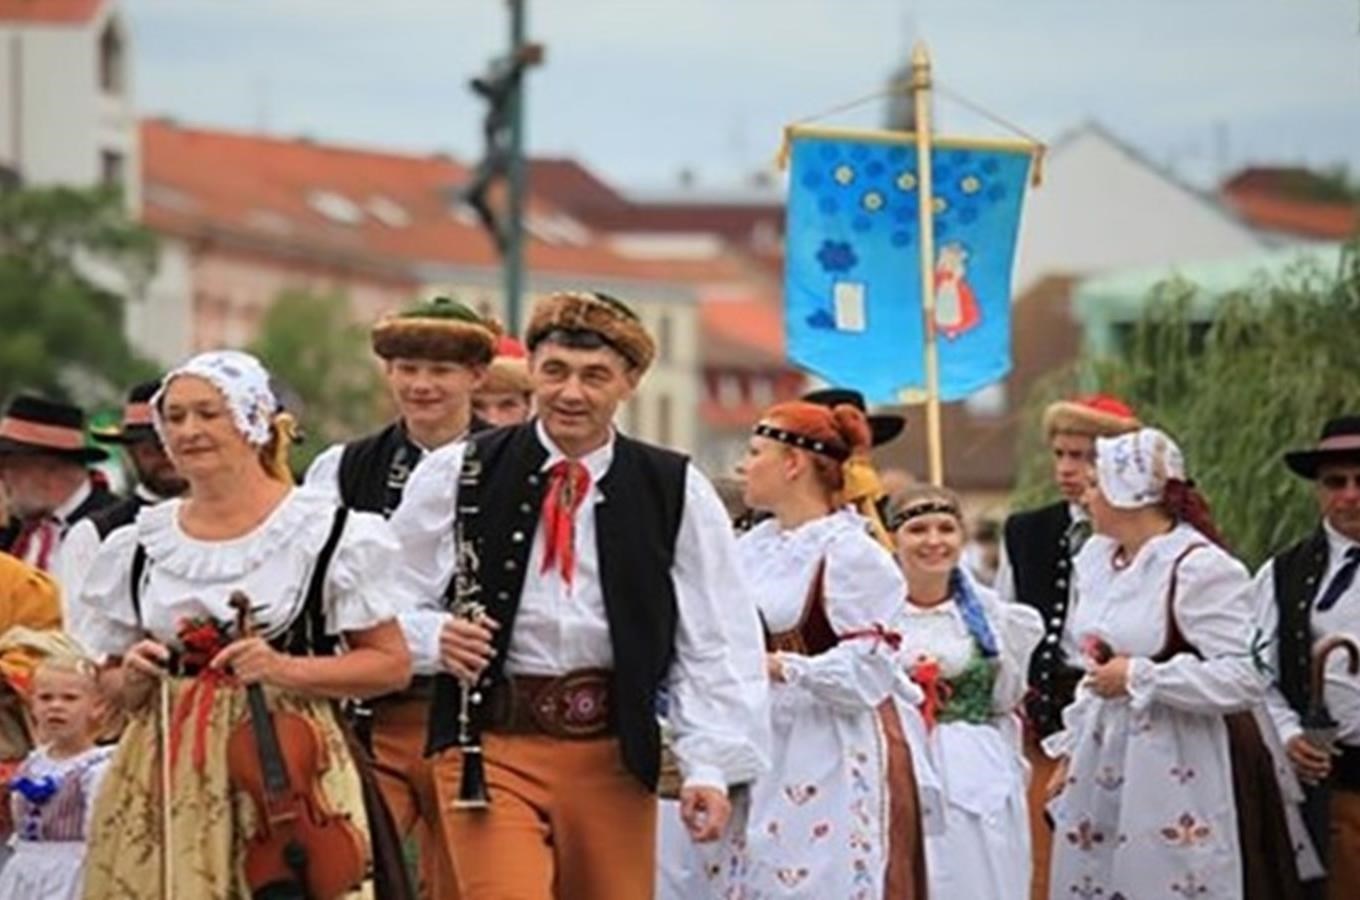 Mezinárodní folklórní festival v Písku